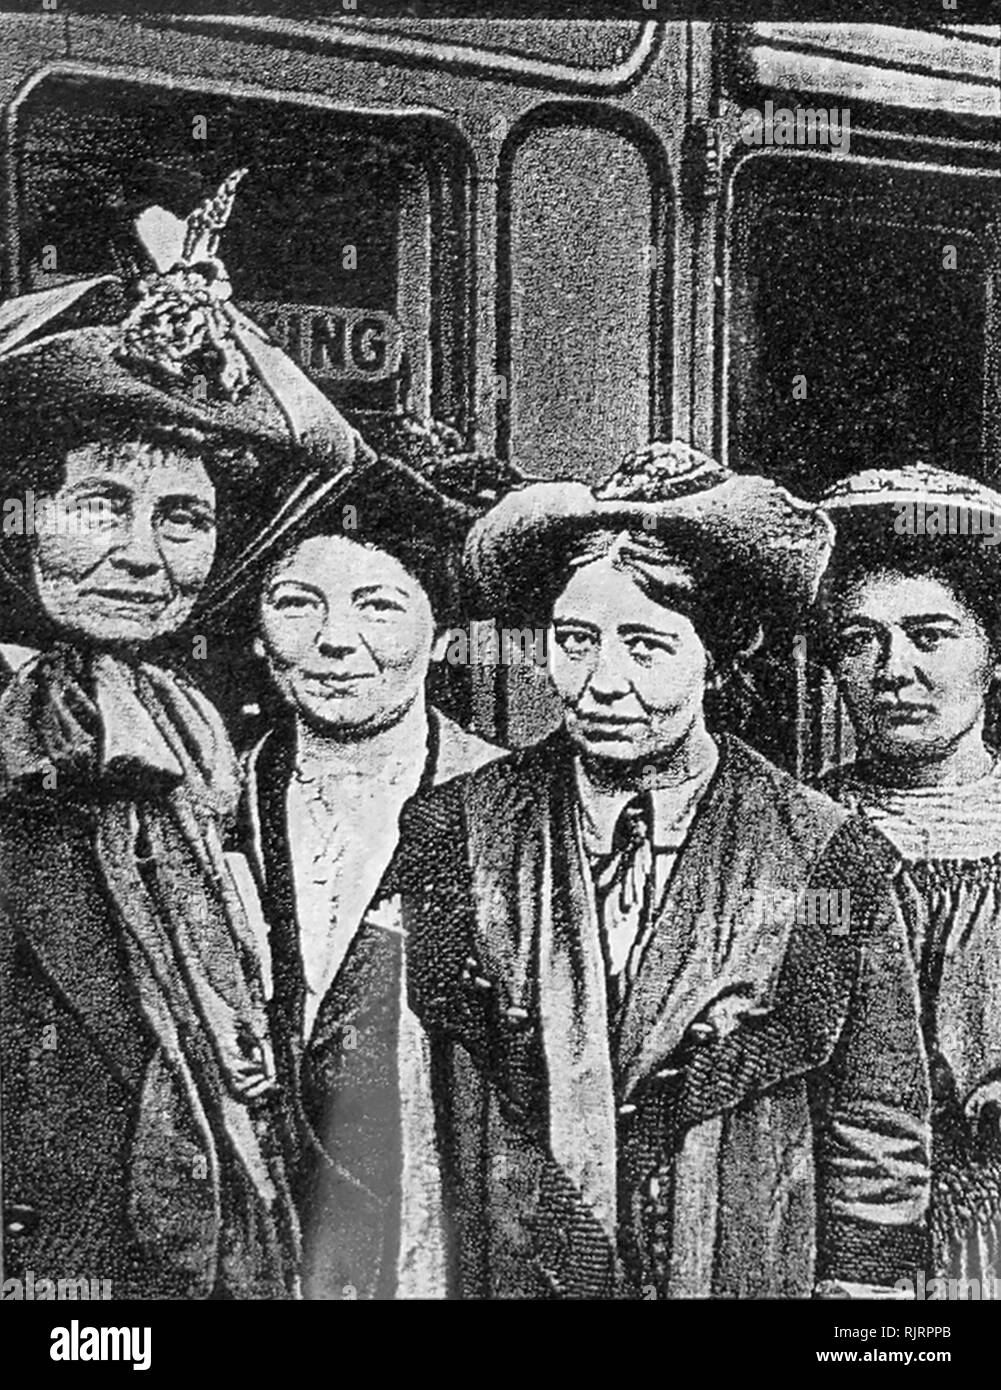 Mitglieder der Pankhurst suffragette Familie, die für Frauen warb der Abstimmung in Großbritannien zu haben. Nach rechts: Emmeline Pankhurst (1858-1928), einer der Gründer der britischen Suffragettenbewegung; Töchter: Sylvia Pankhurst (1882-1960); Christabel Pankhurst (1880-1958); Adela Pankhurst (1886-1961), eine australische Frauenrechtlerin Links. Stockfoto